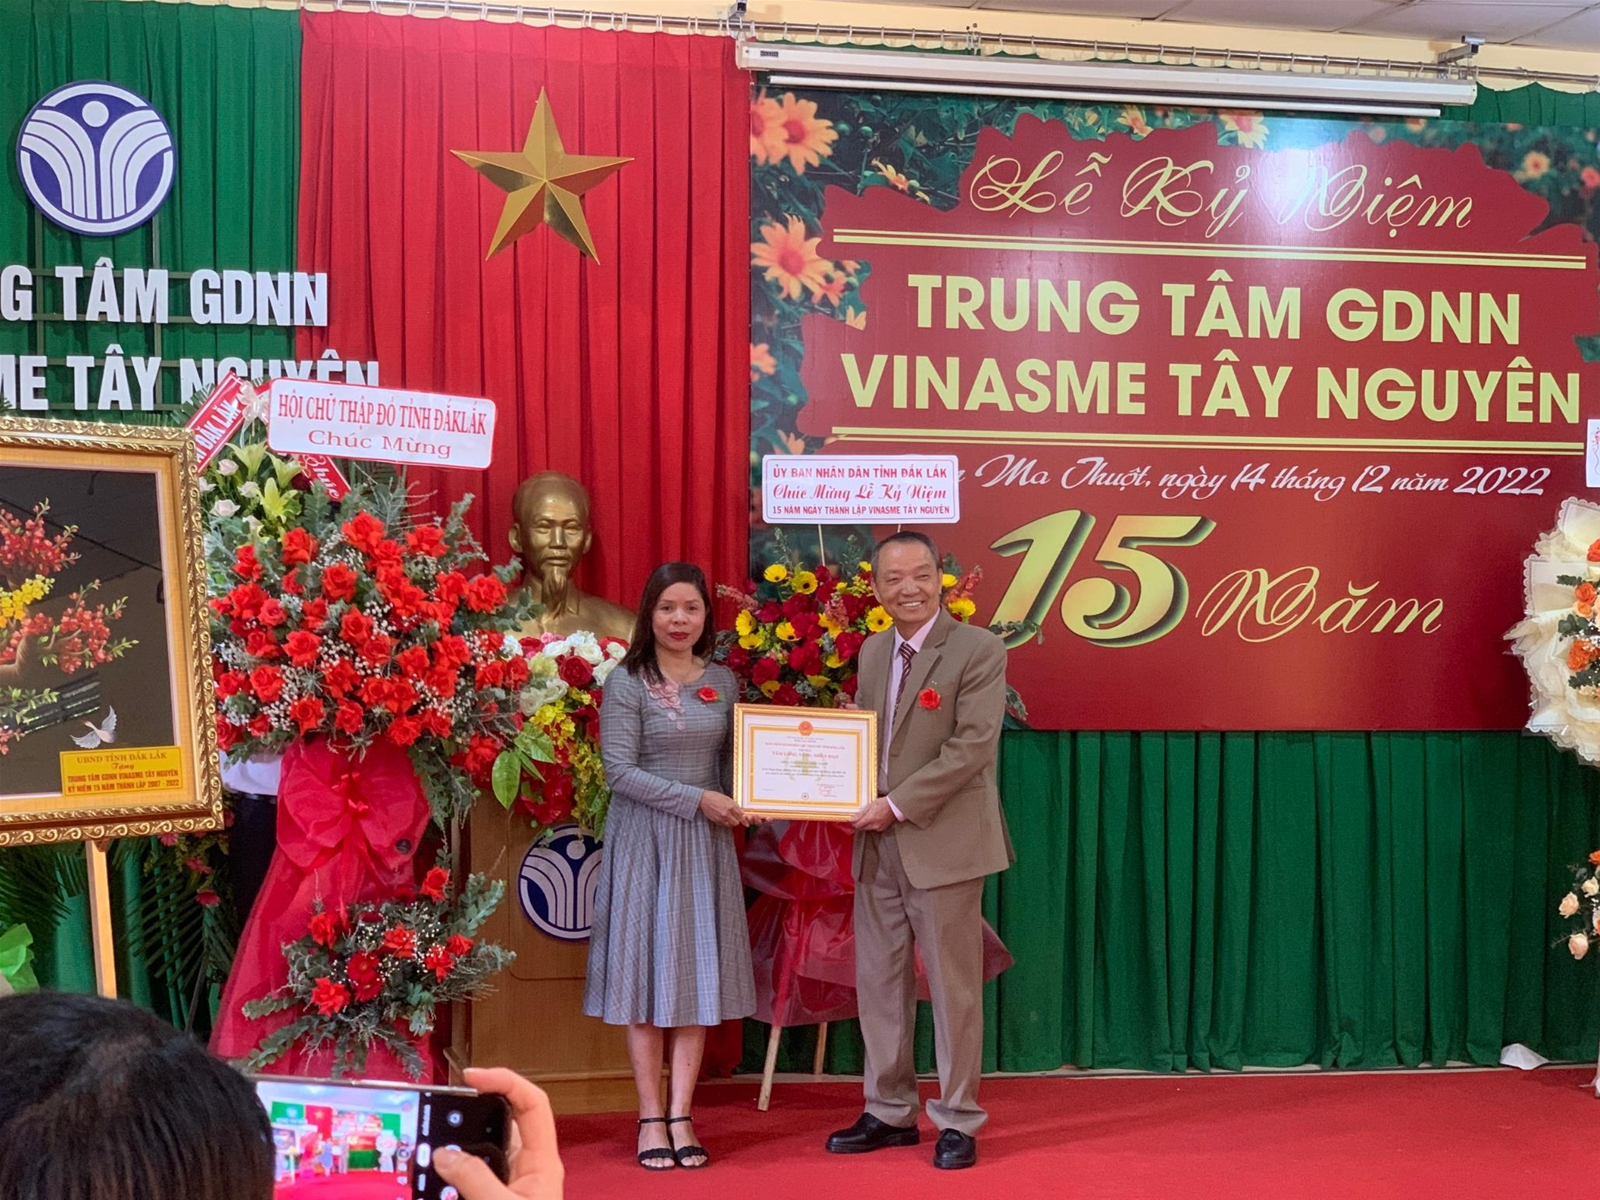 Bà Ayun H' Hương thay mặt Hội Chữ thập đỏ tỉnh Đăk Lăk ghi nhận đóng góp thiện nguyện của Trung tâm GDNN Vinasme Tây Nguyên.